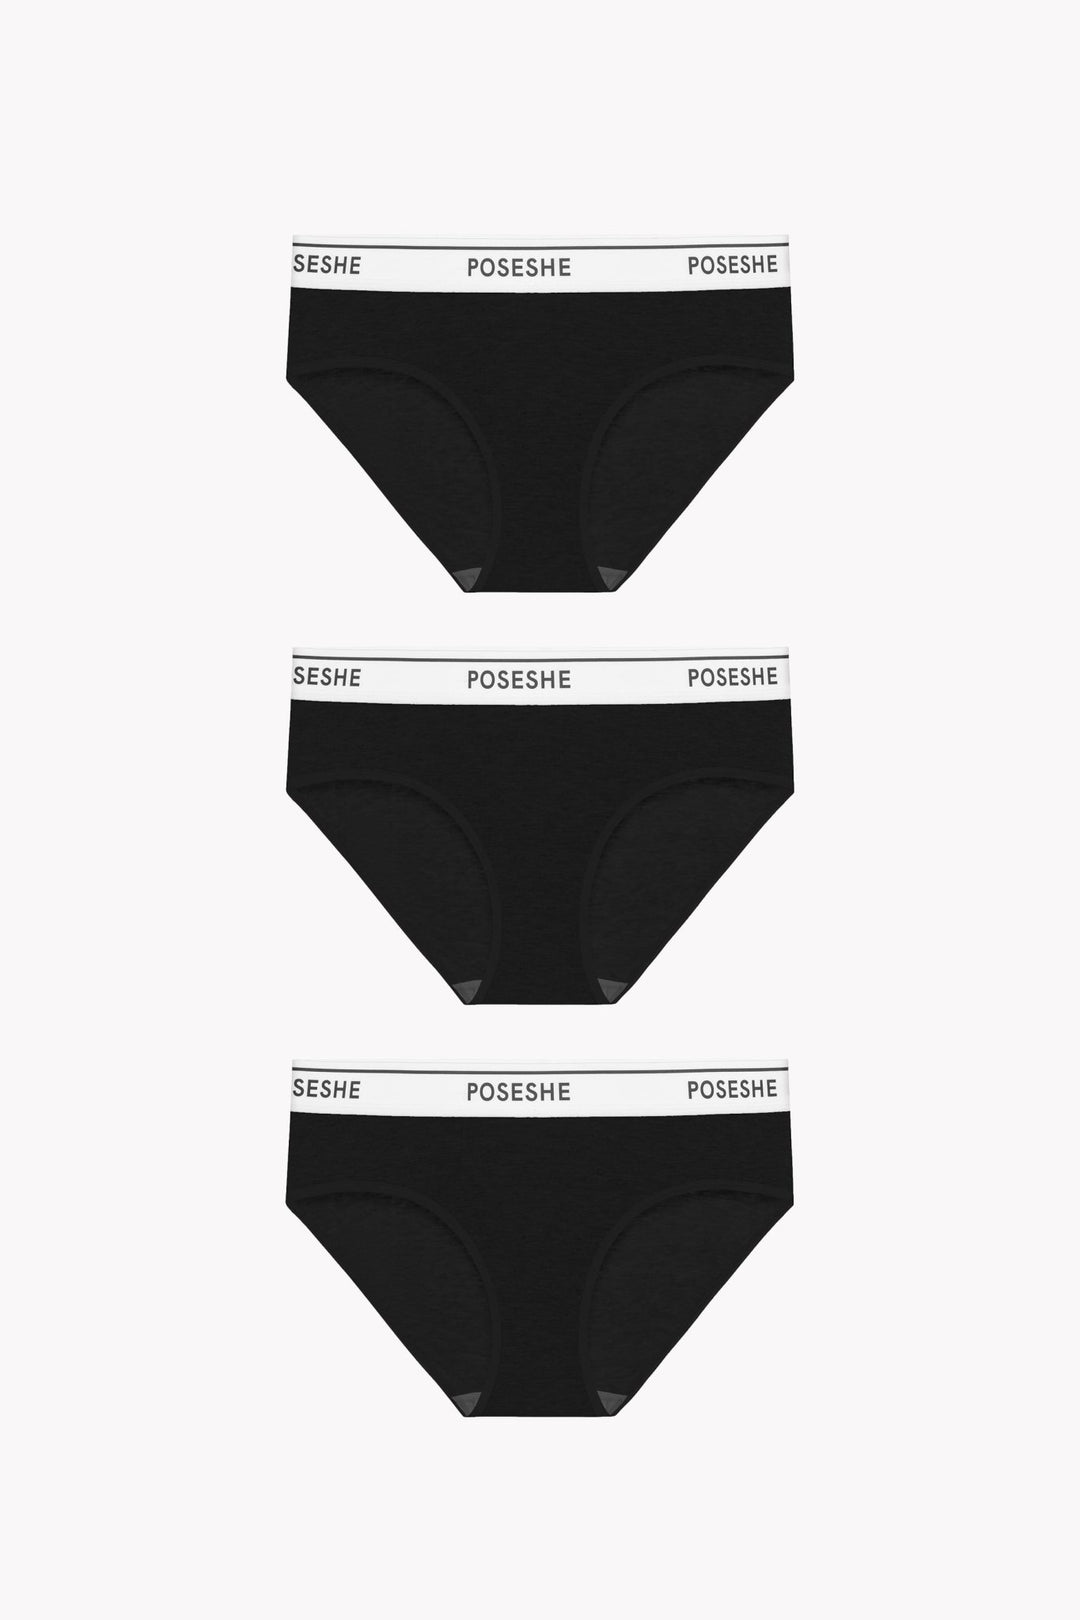 Plus Size Women briefs - Sustainable Boyshorts Underwear